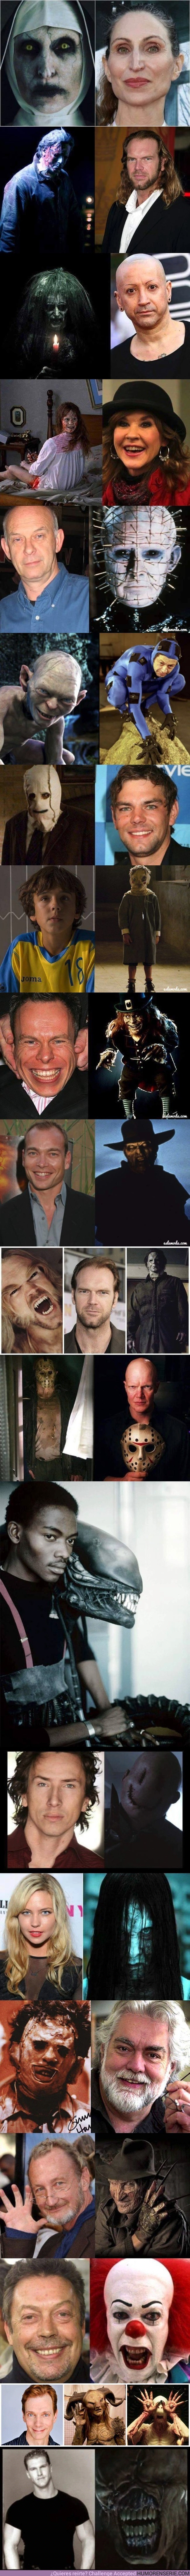 3041 - Las caras detrás de los actores más terroríficos de la historia del cine